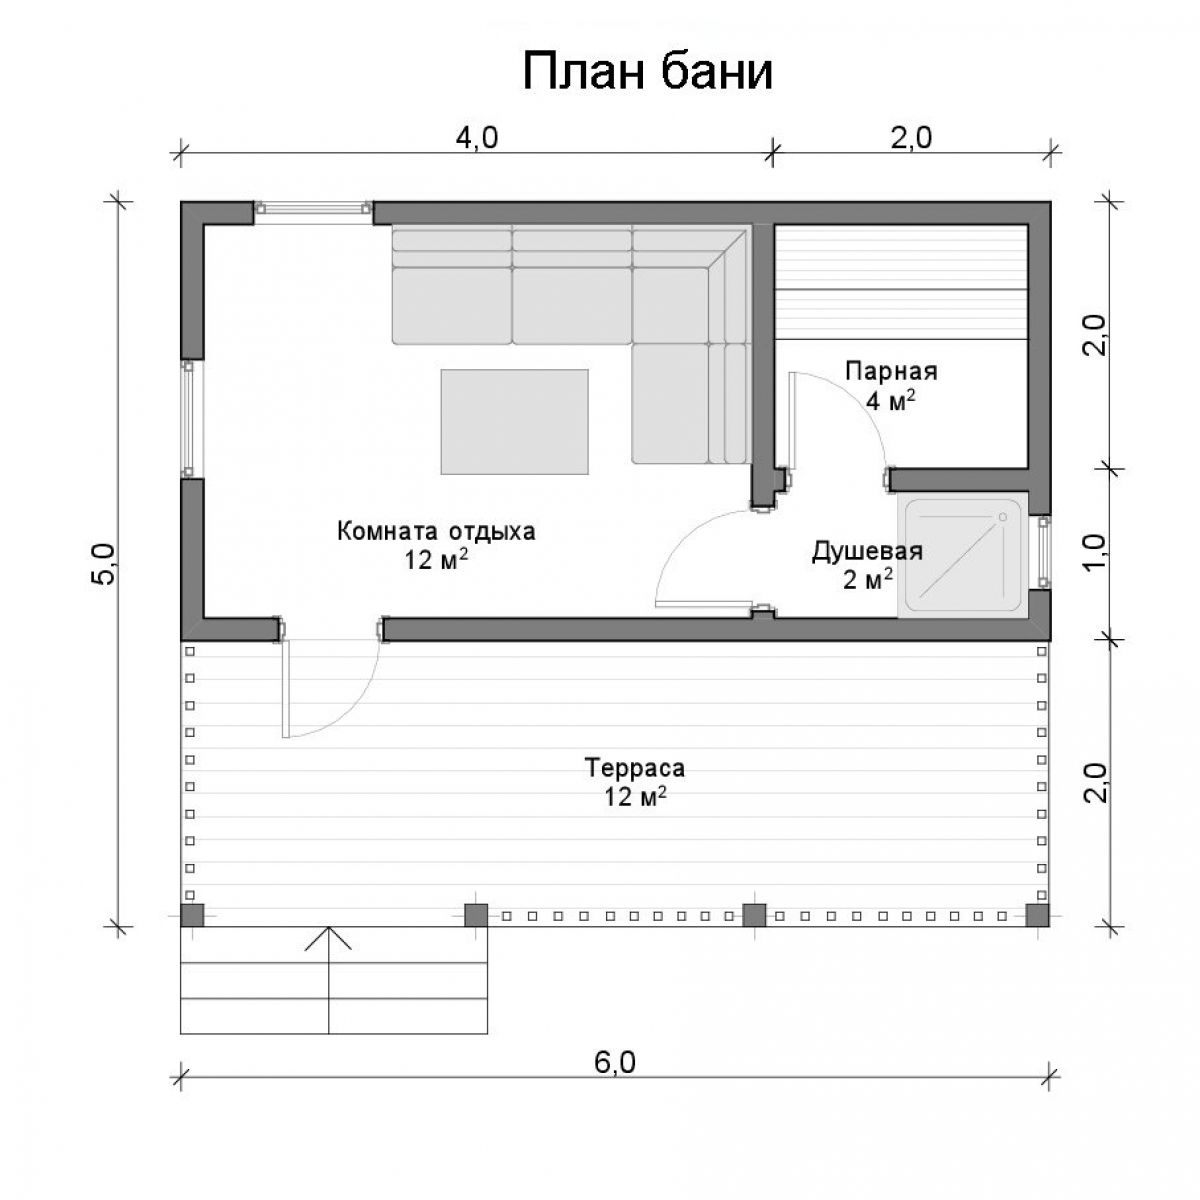 Планировка бани удобная: лучшие планы для русской бани и сауны площадью 5х6 и 5х5 м, варианты с бассейном внутри, мойка и парилка отдельно